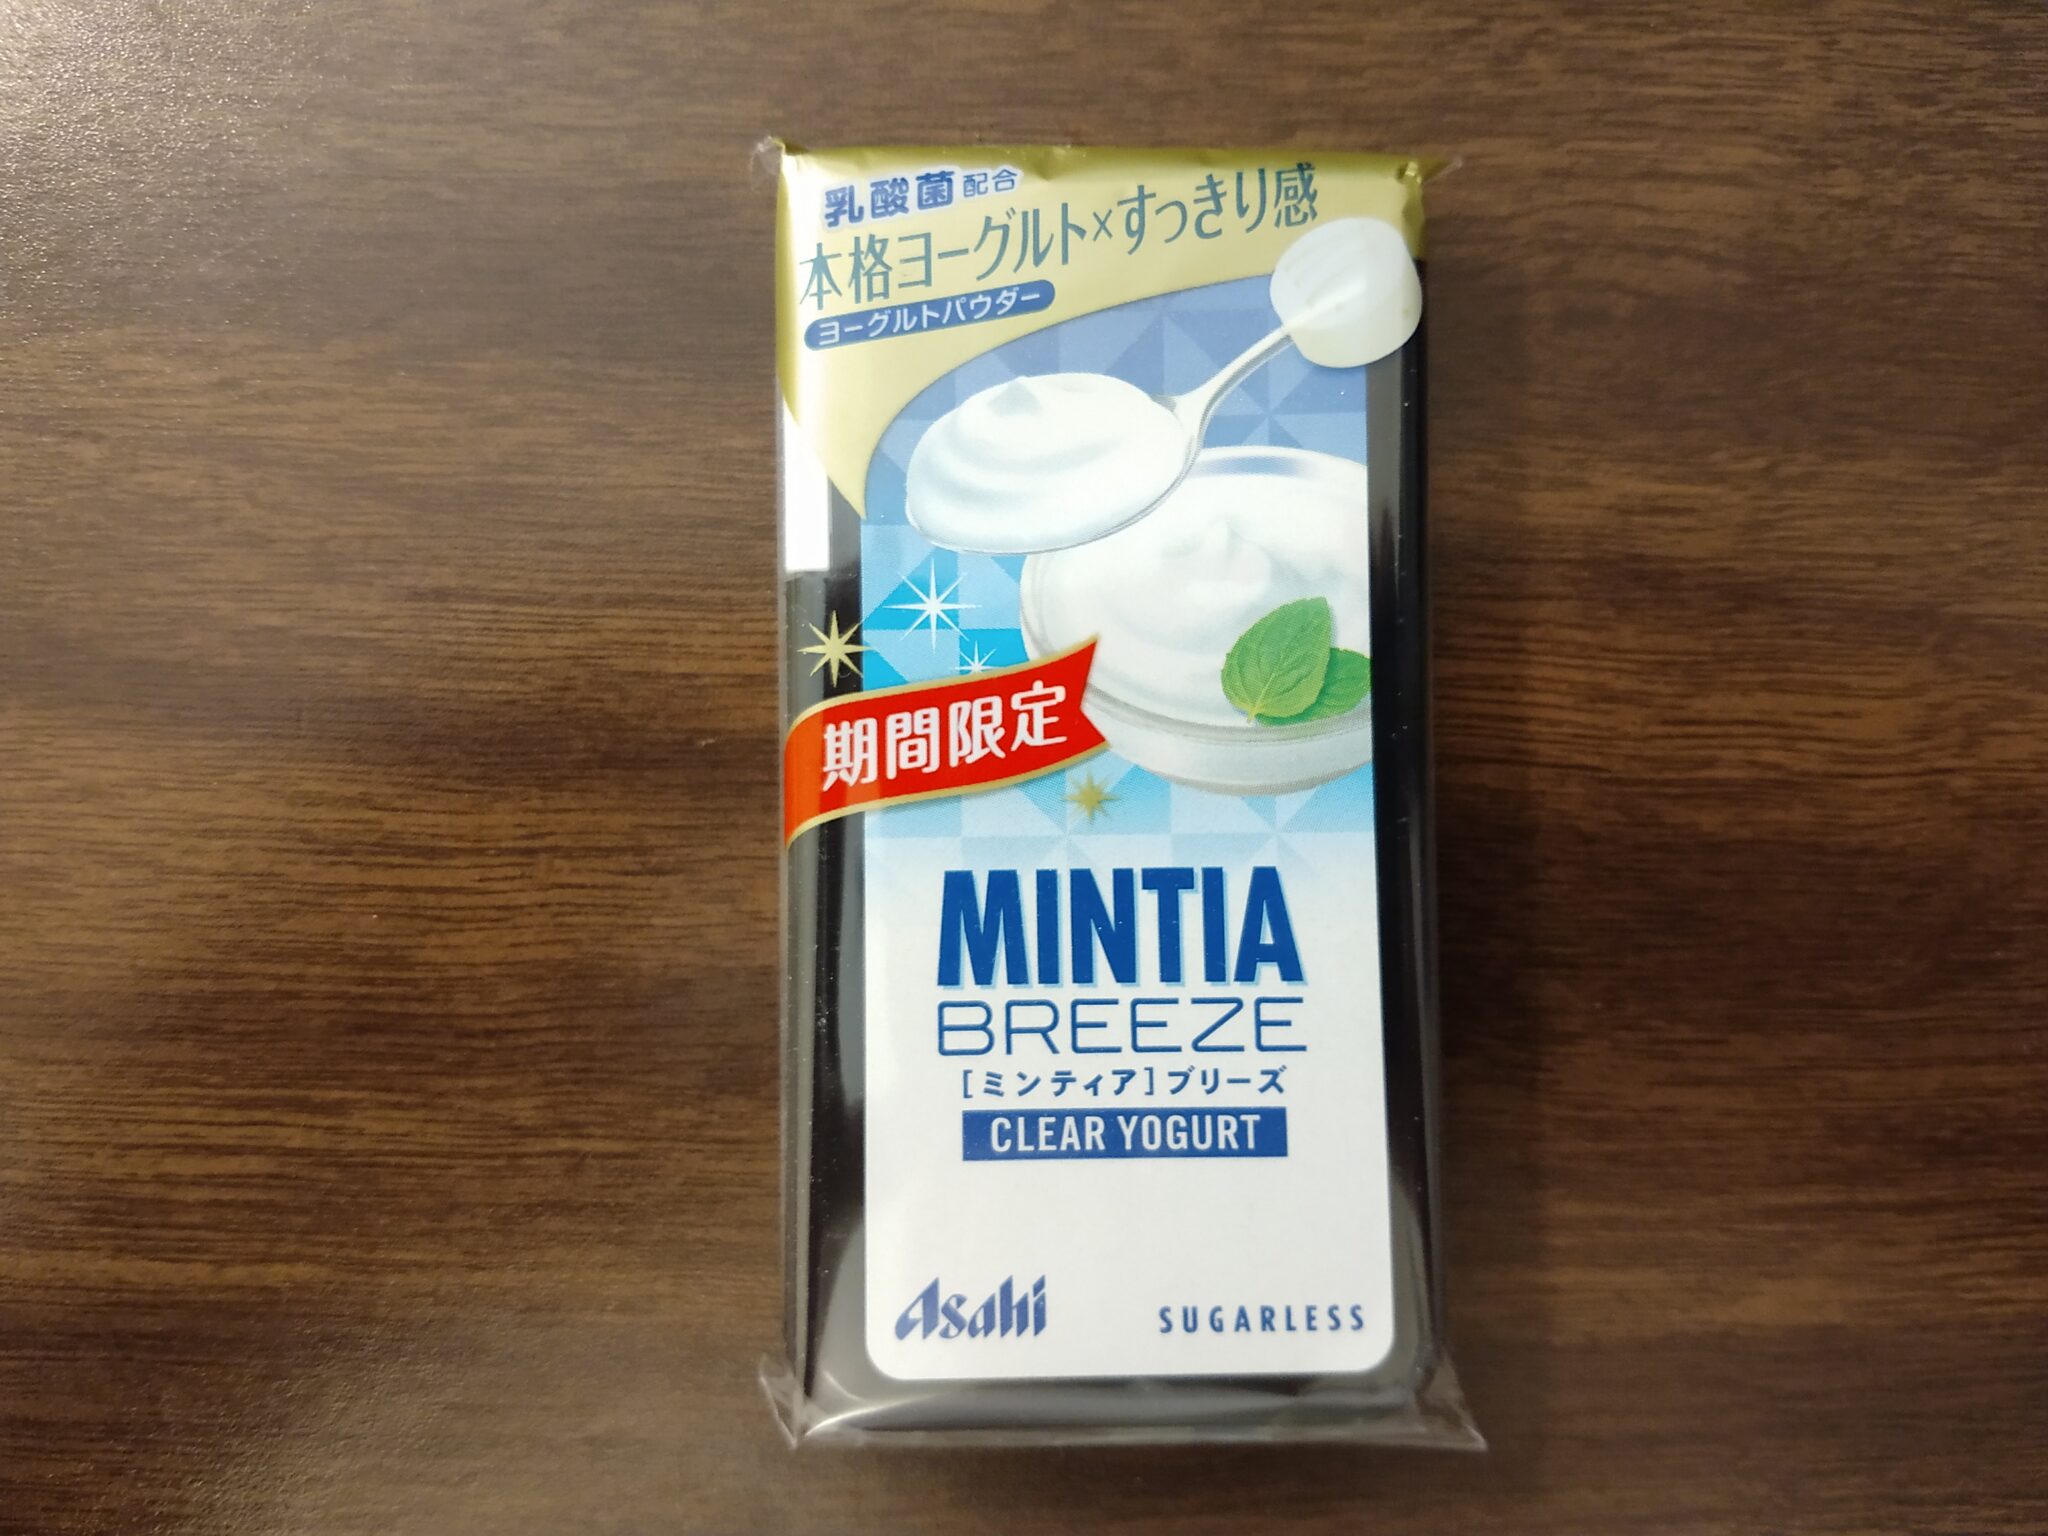 Mintia Breeze – Clear Yogurt